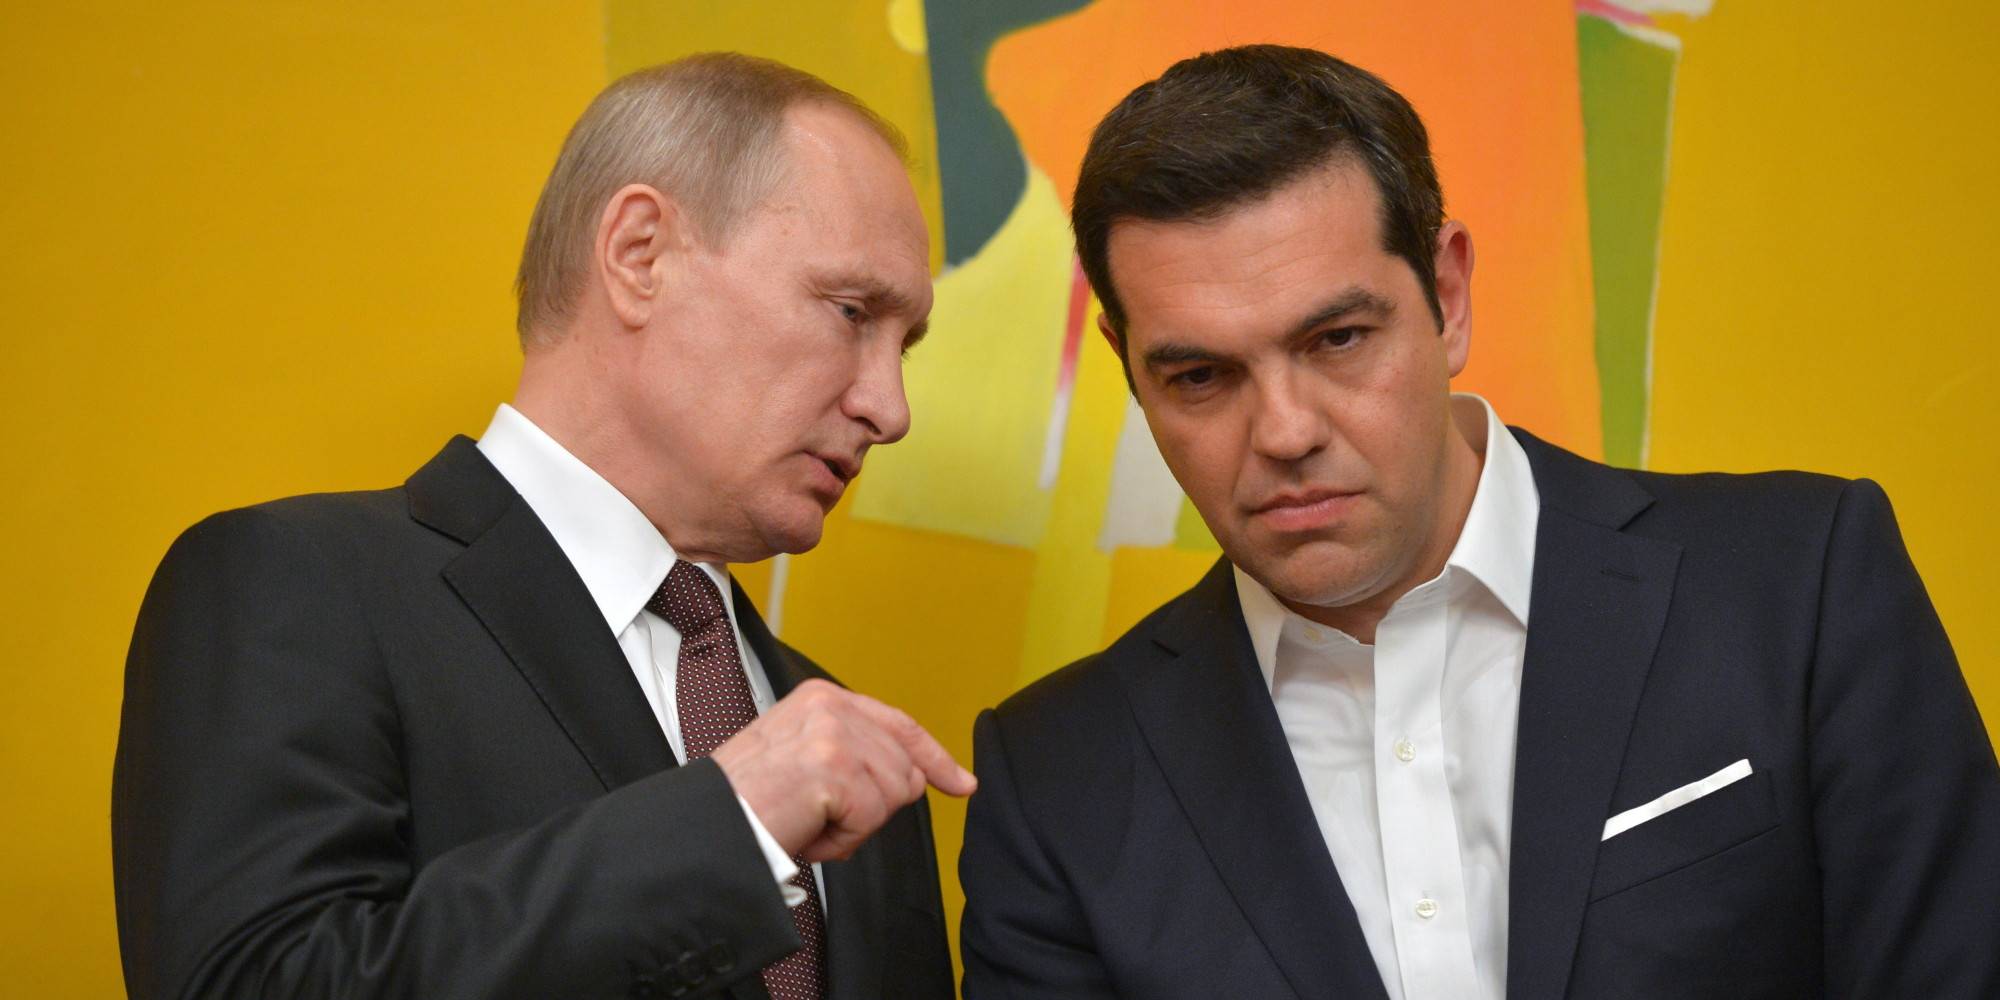 Στο ρωσικό ΥΠΕΞ κλήθηκε ο Ελληνας πρεσβευτής στην Μόσχα – Του κοινοποιούνται οι απελάσεις των Ελλήνων διπλωματών